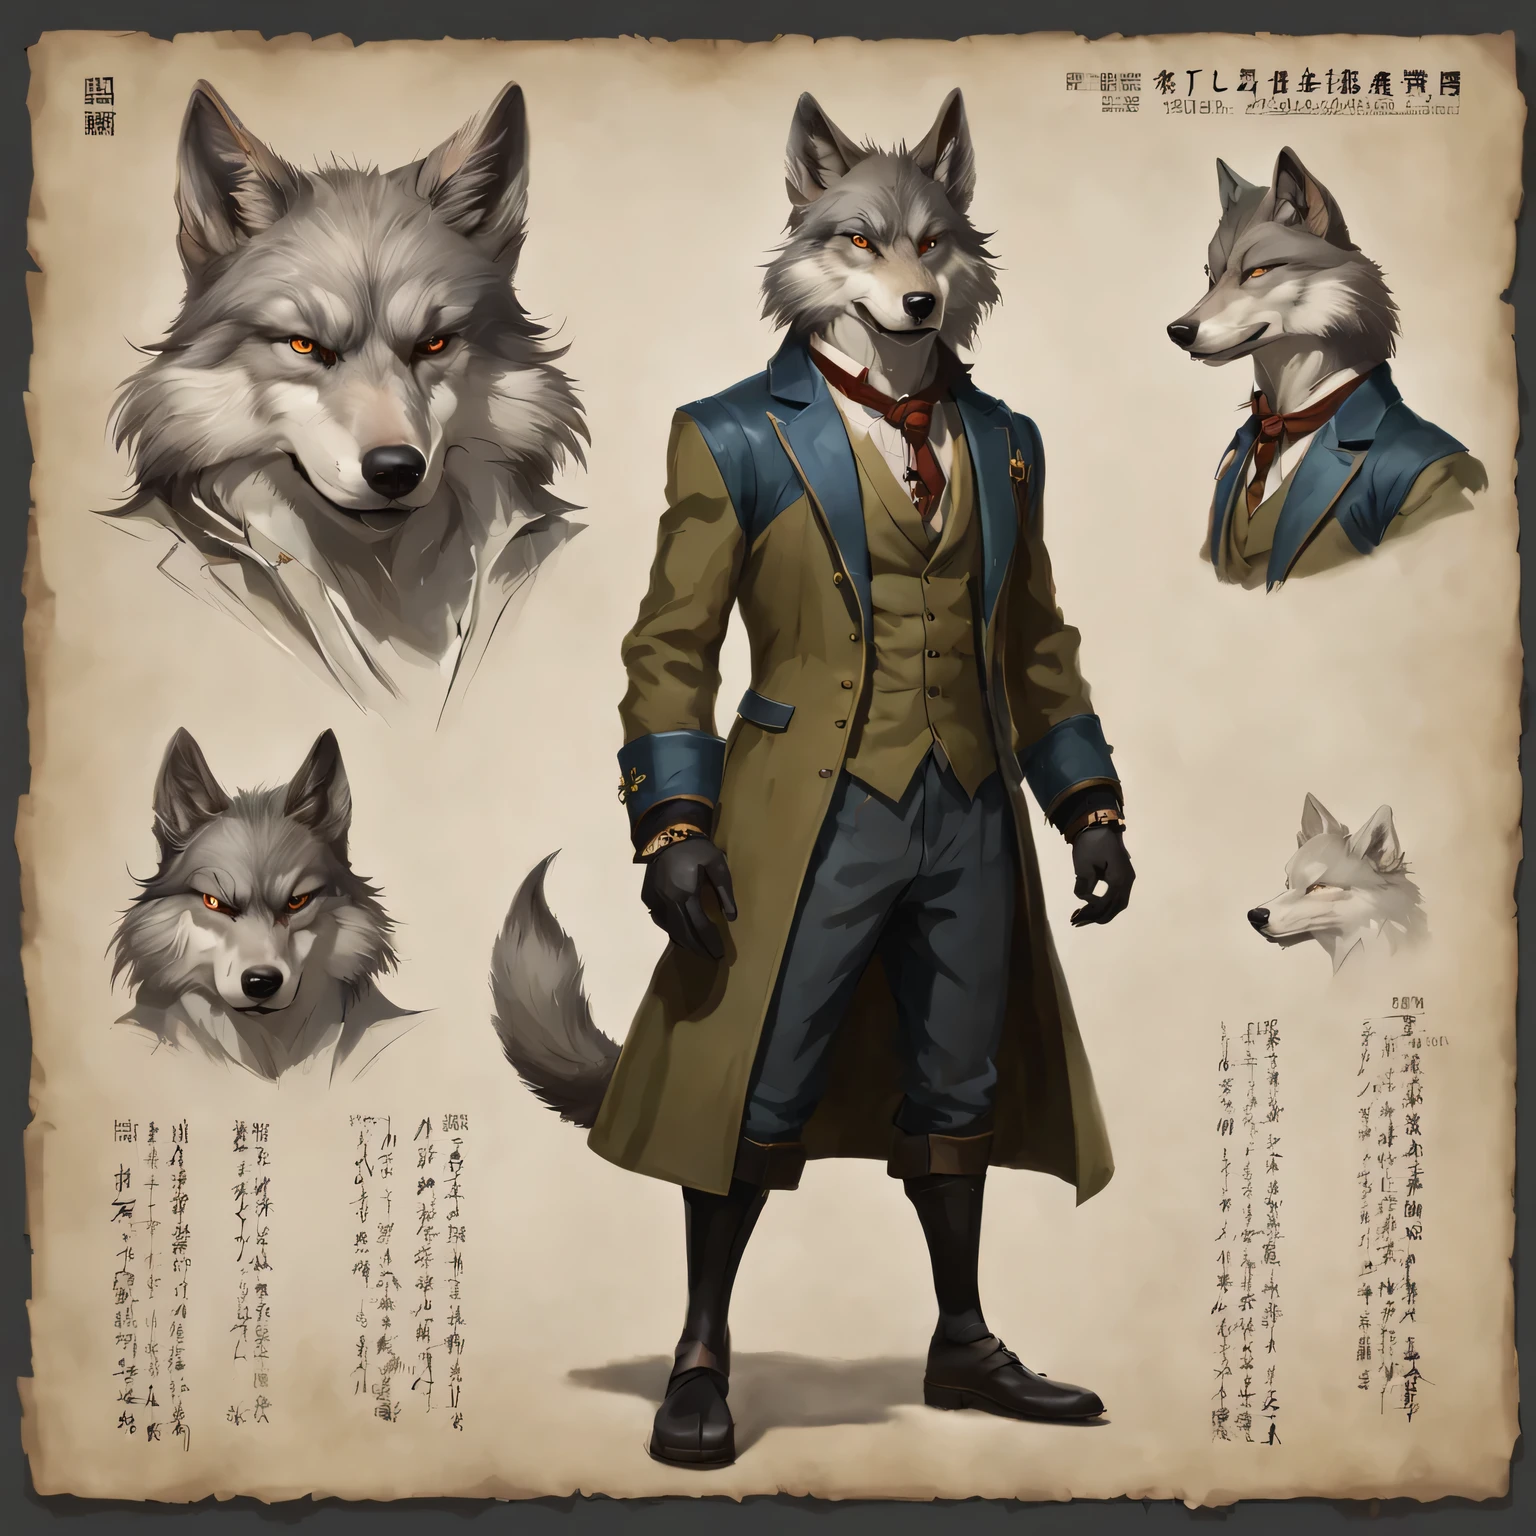 キャラクターデザインシート, 擬人化された紳士の狼, マーク・ライデン風, シュエ・ワン, 絶妙な技量, 高いディテール, 8k, 現実的, 技術的特徴を持つ碑文, キャラクターの説明が与えられている, 彼の強みが発揮されている